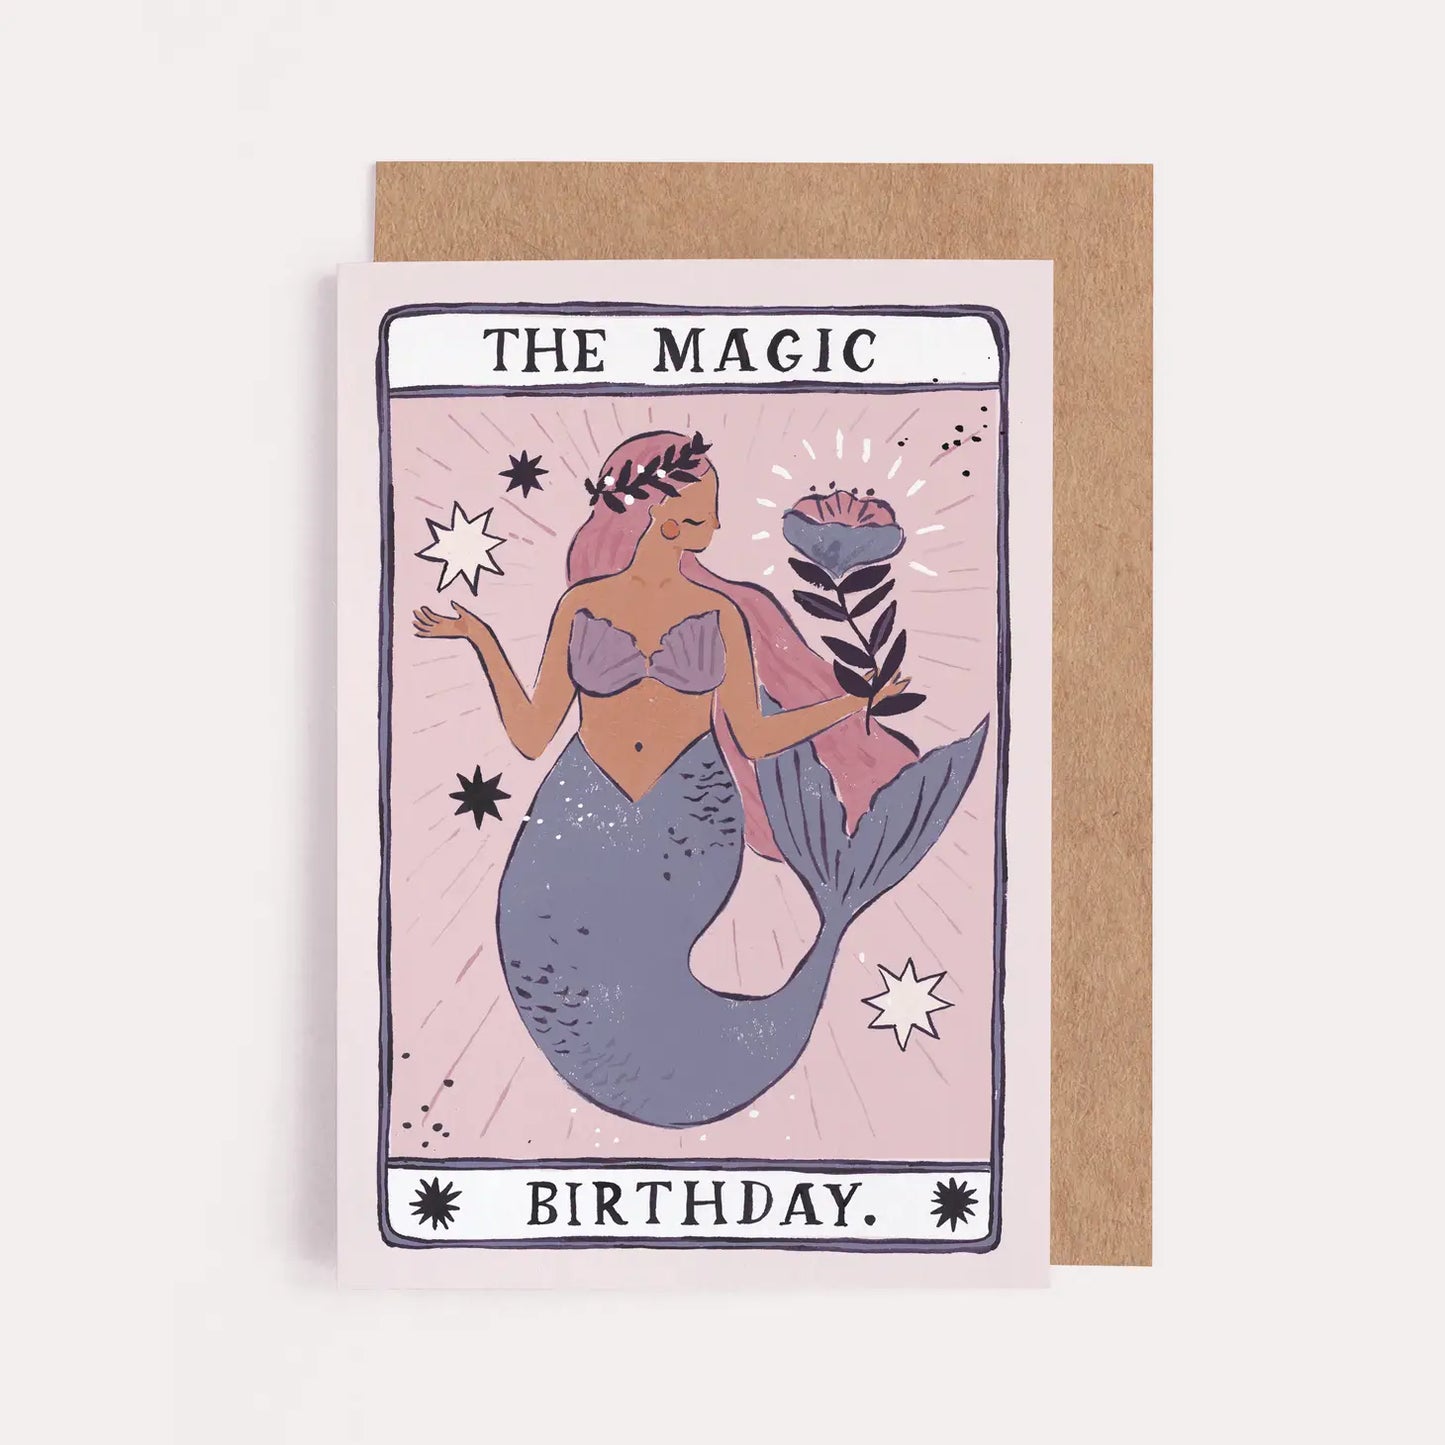 Vous plongez dans un monde enchanté avec cette carte d'anniversaire inspirée du tarot.